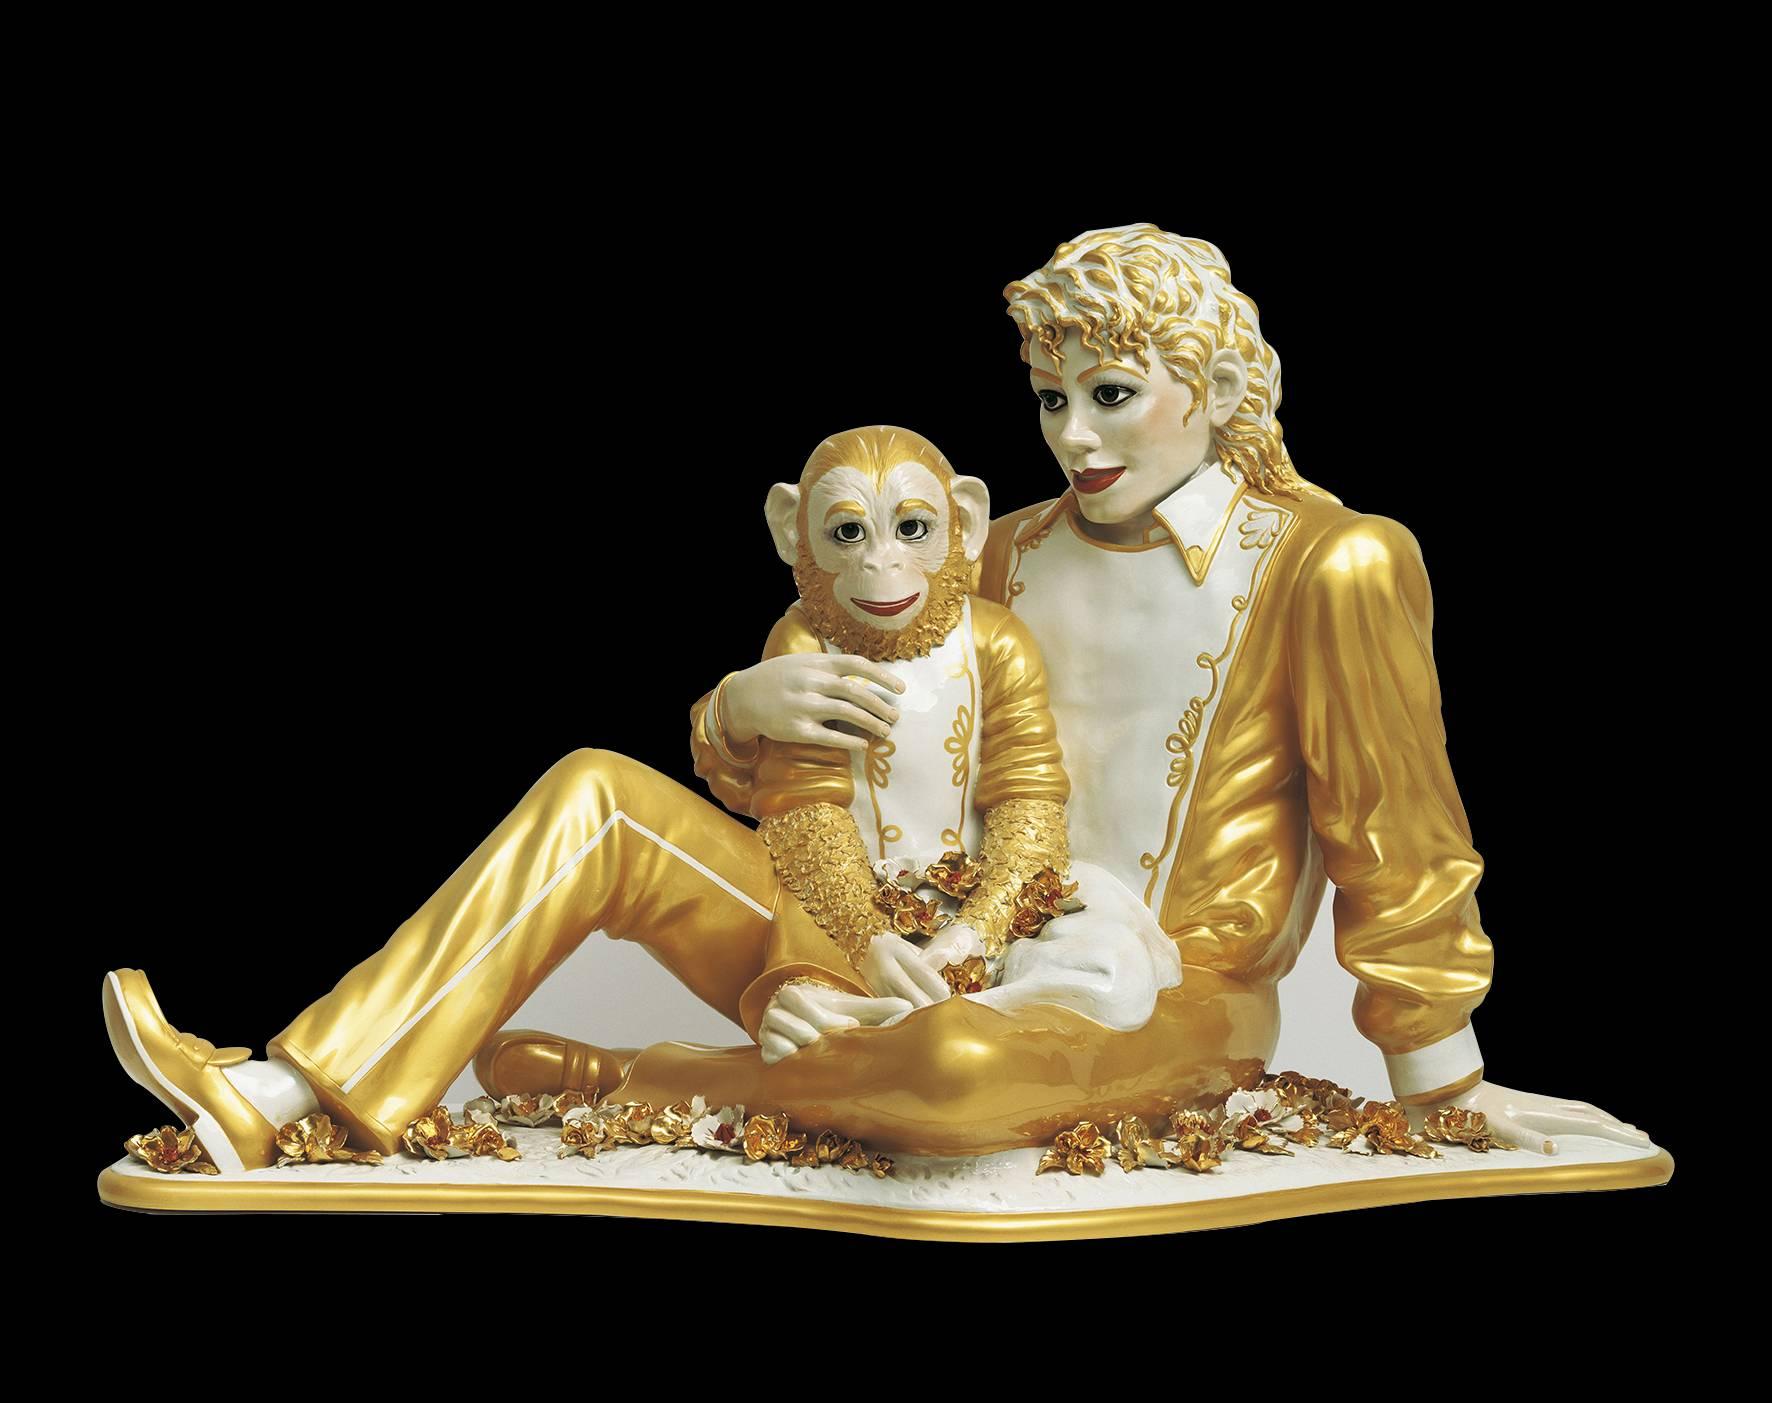 ETT GYLLENE FROSSERIJeff Koons frossar i guld och blomster i sin skulptur av Michael Jackson och apan Bubbles.